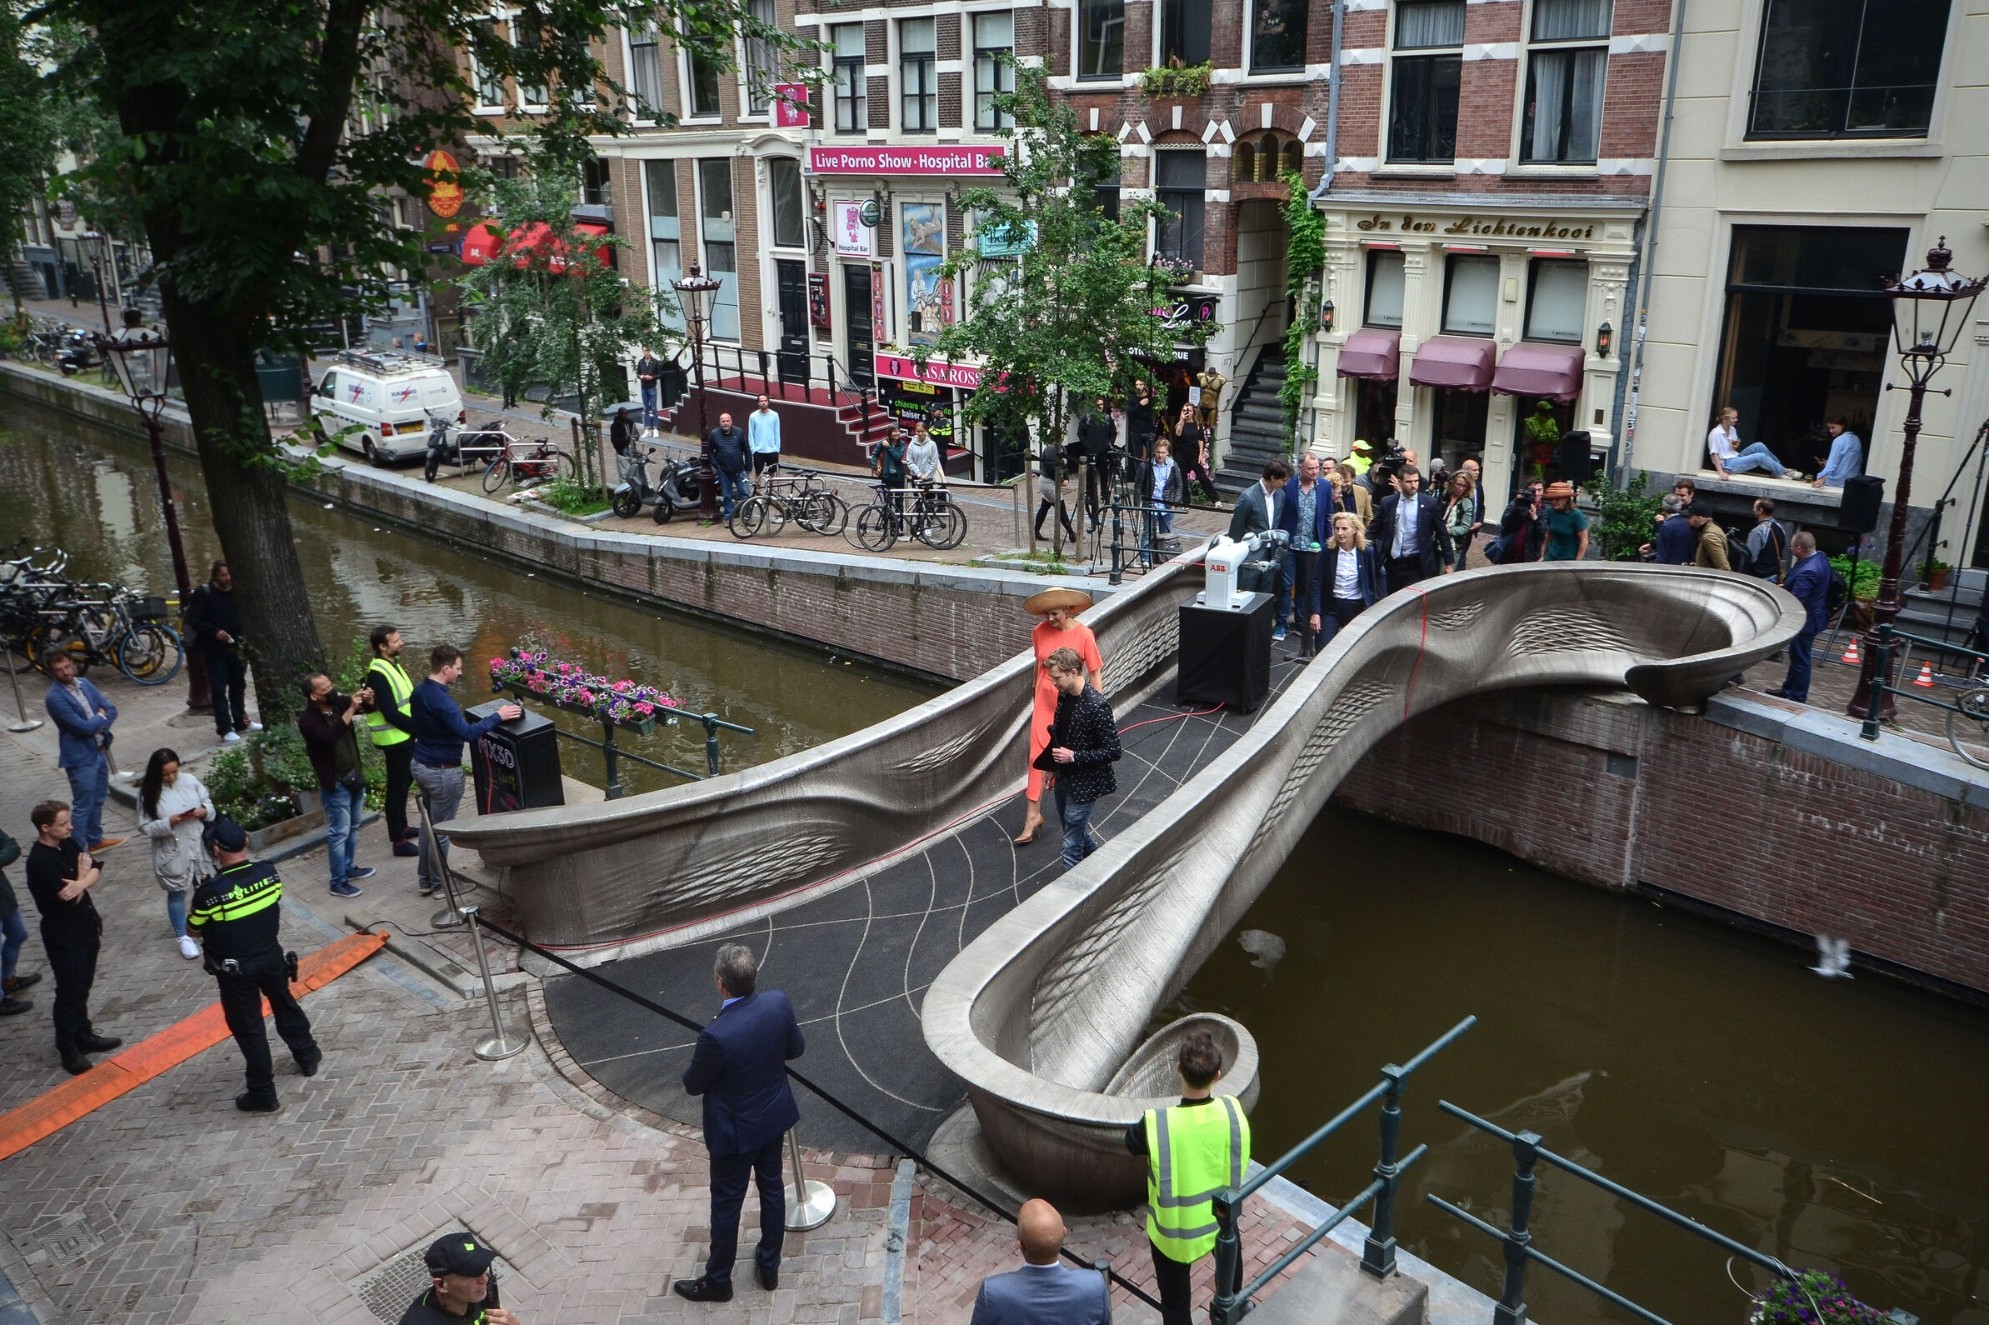 Amsterdamský Red Light District zdobí první chytrý ocelový most z 3D tiskárny